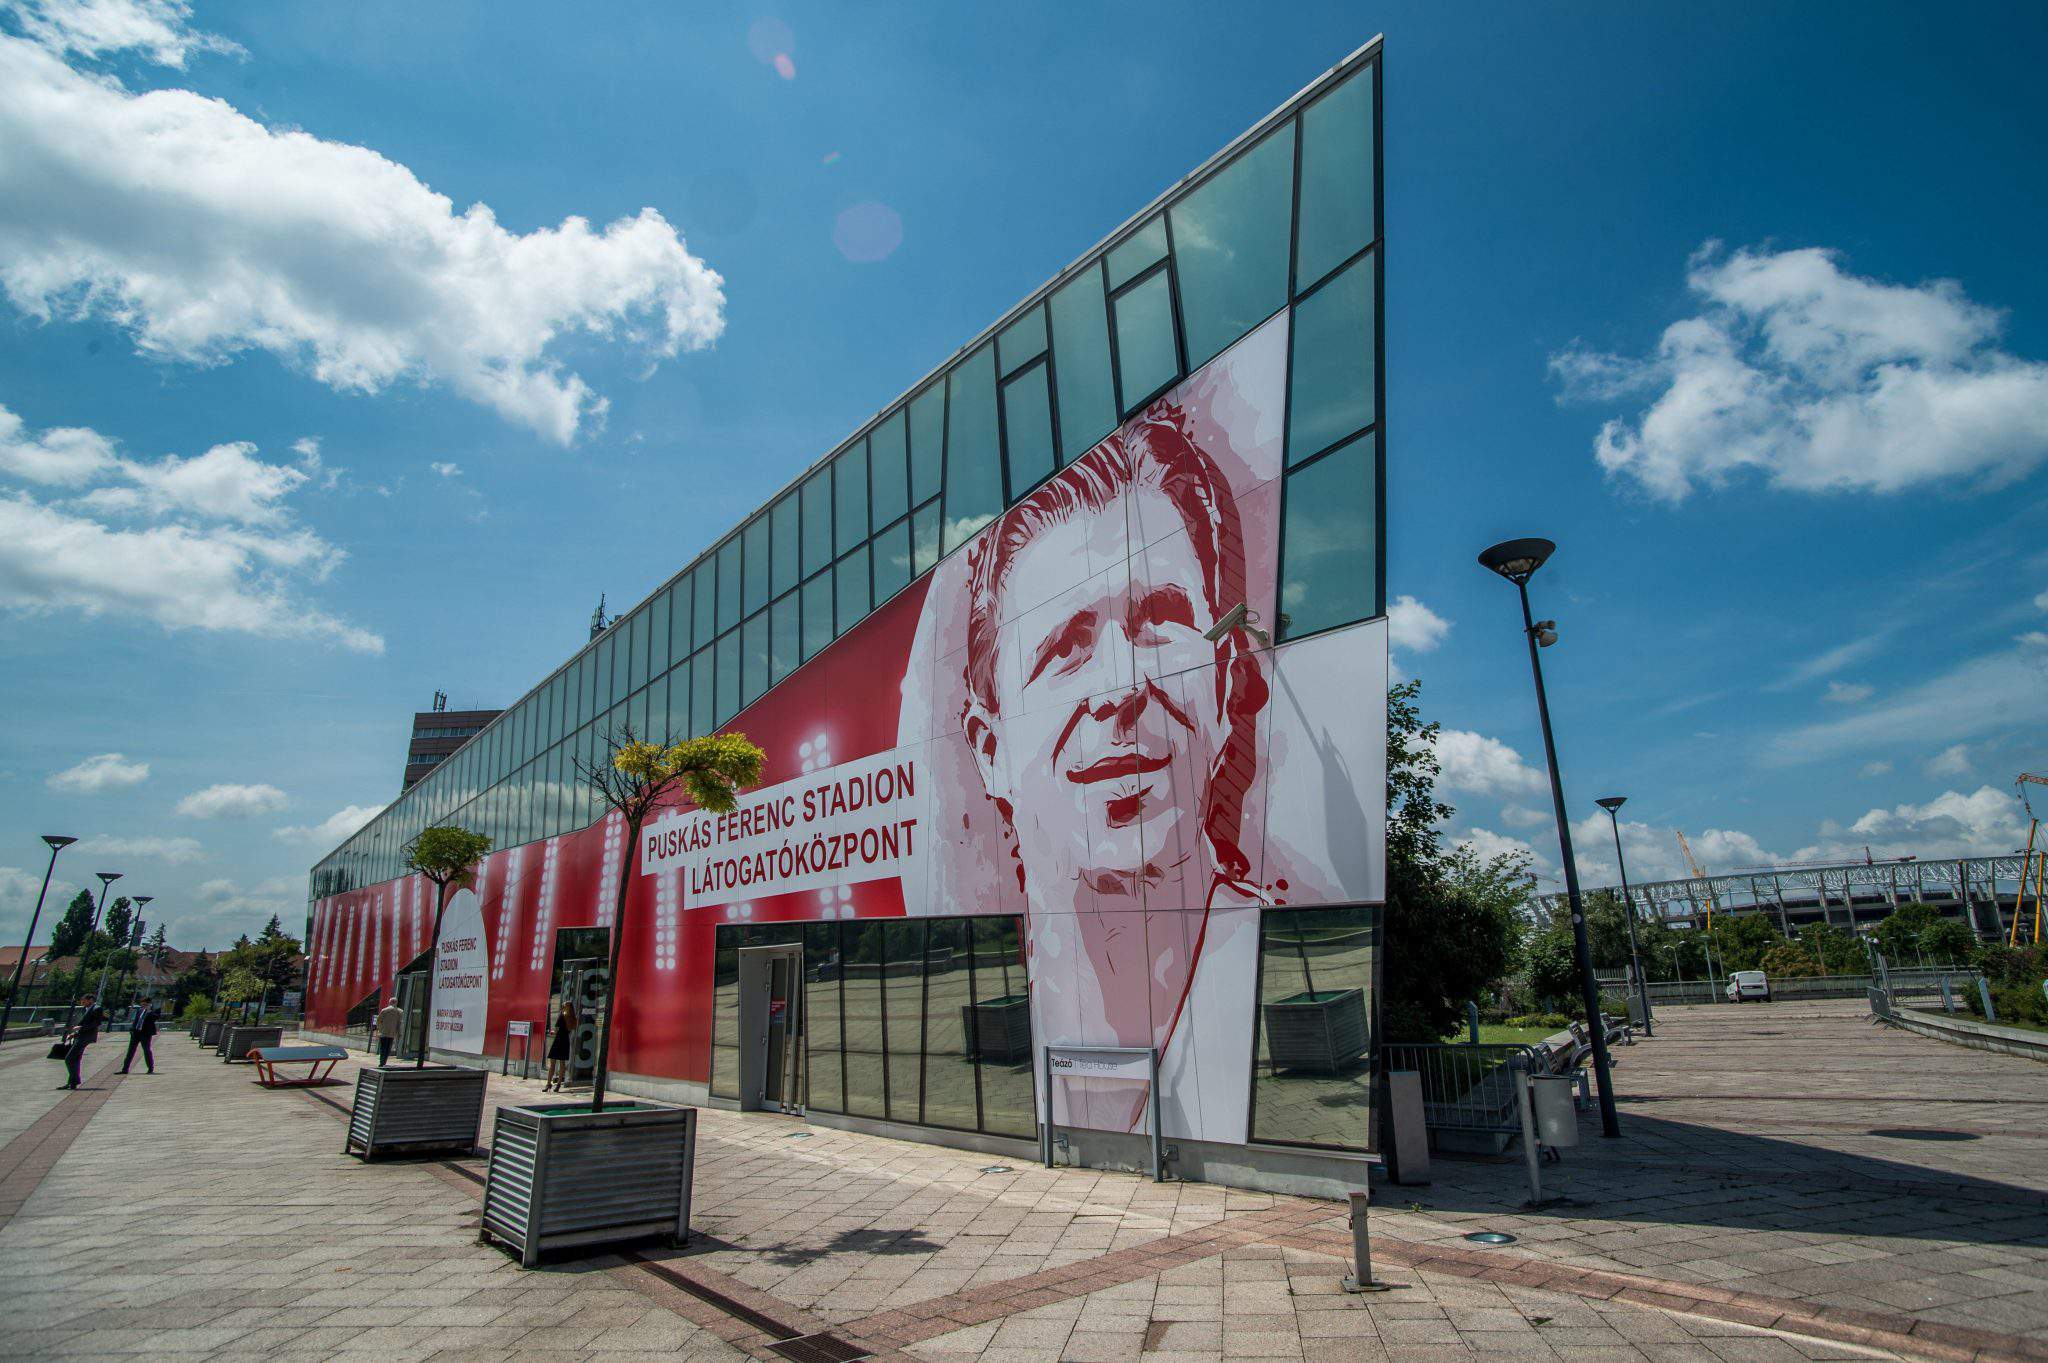 Das Besucherzentrum Puskas Ferenc Stadium wird eröffnet